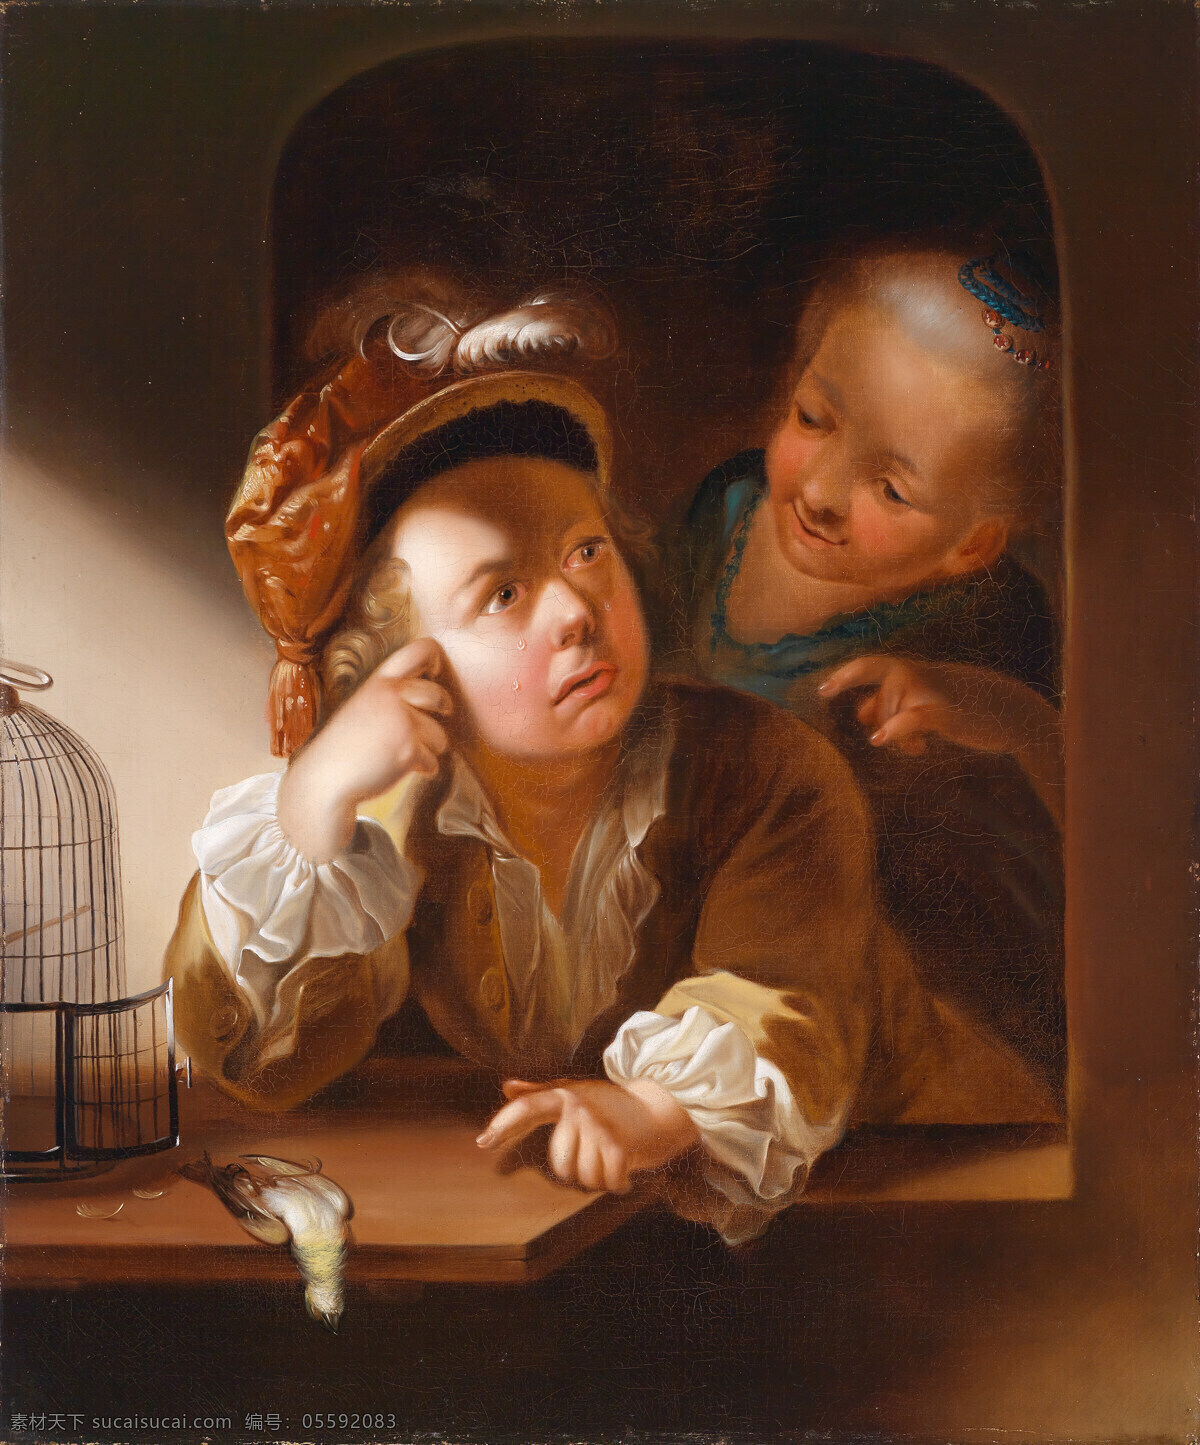 哭泣 窗子 绘画书法 鸟笼 文化艺术 小孩 小鸟 眼泪 小姑娘 18世纪 油画 装饰素材